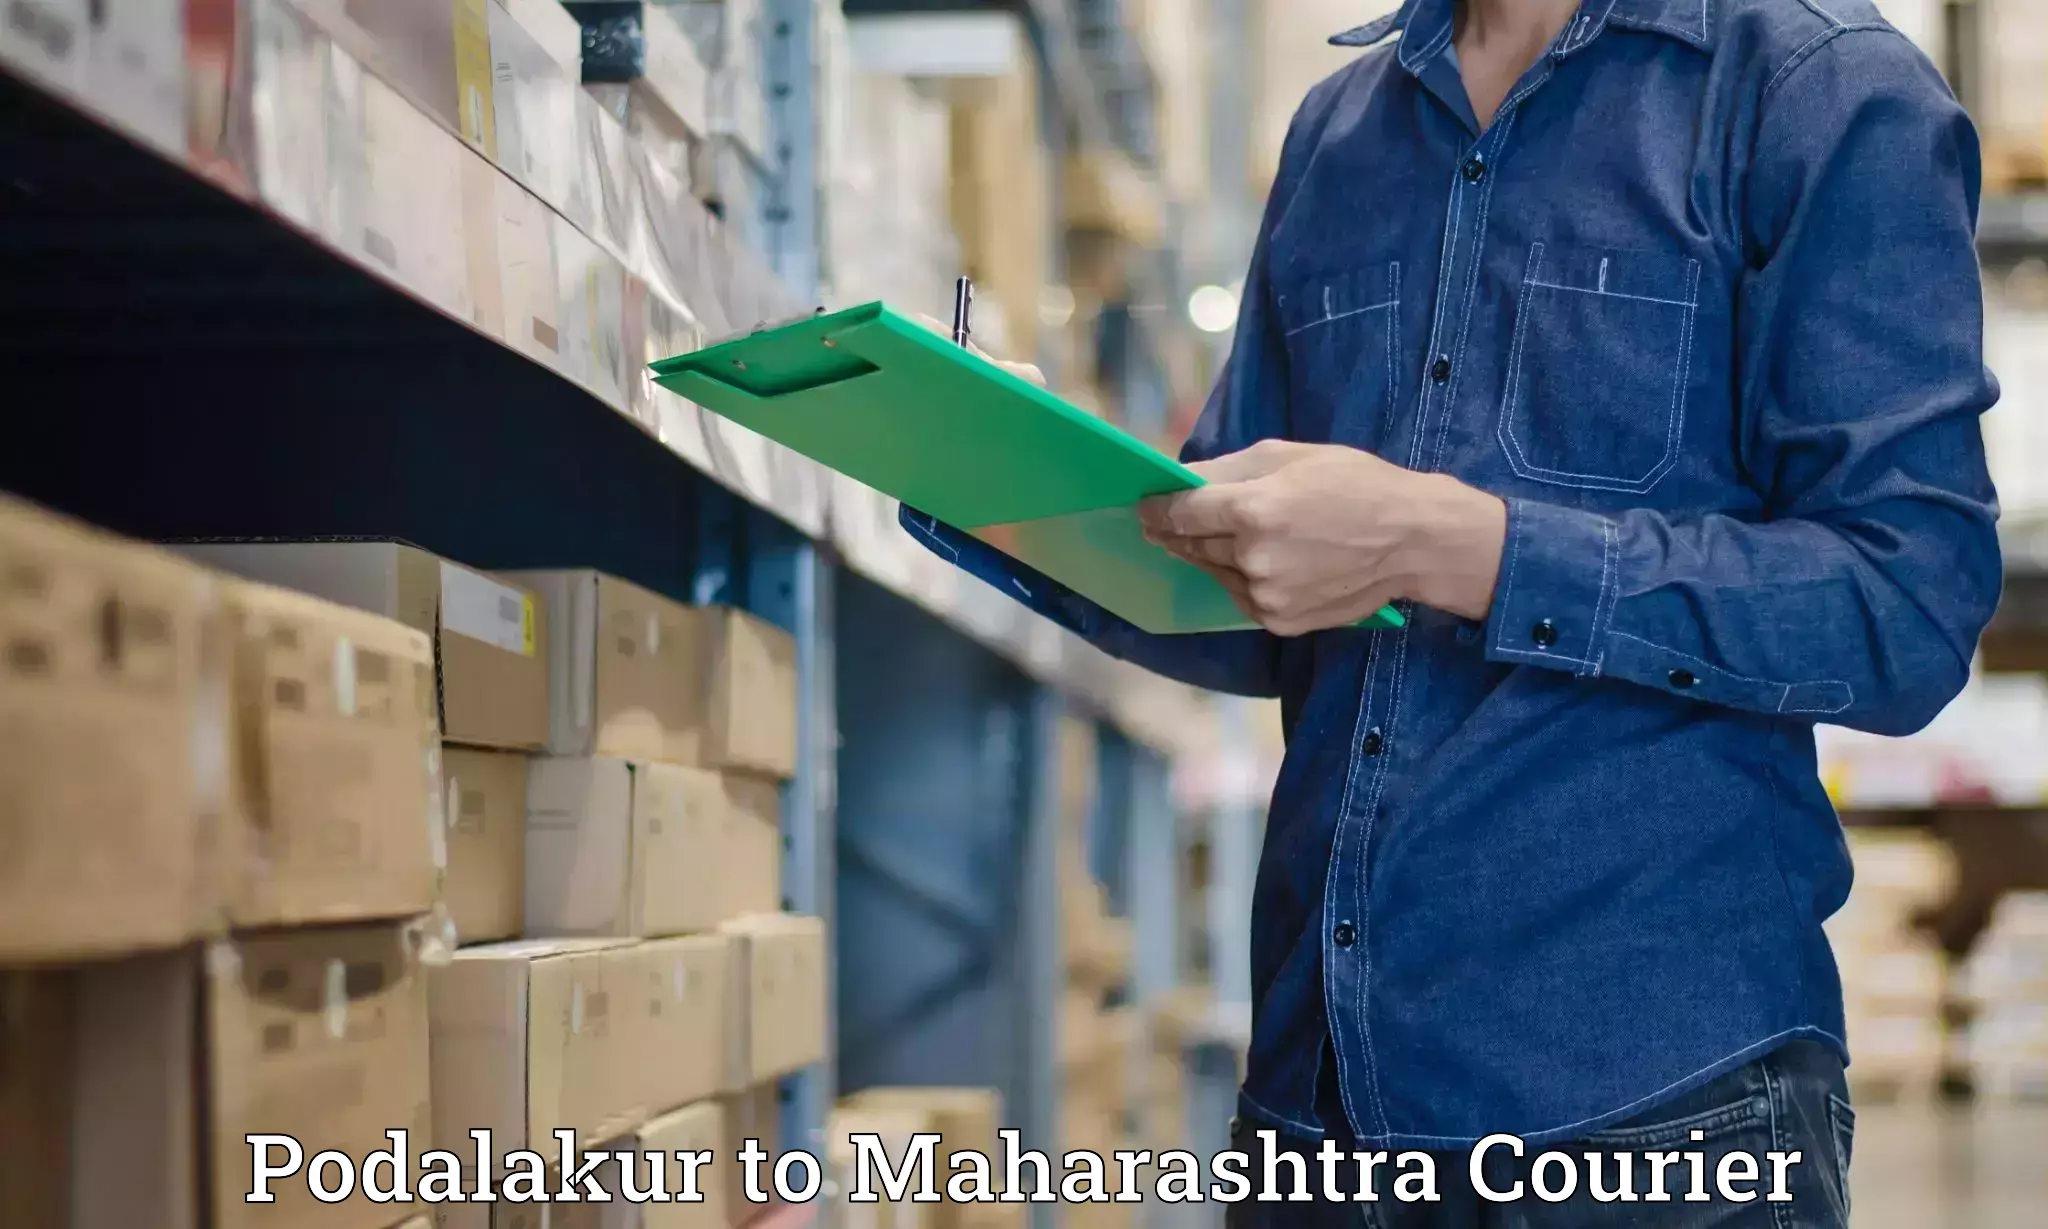 Luggage transport operations Podalakur to Maharashtra